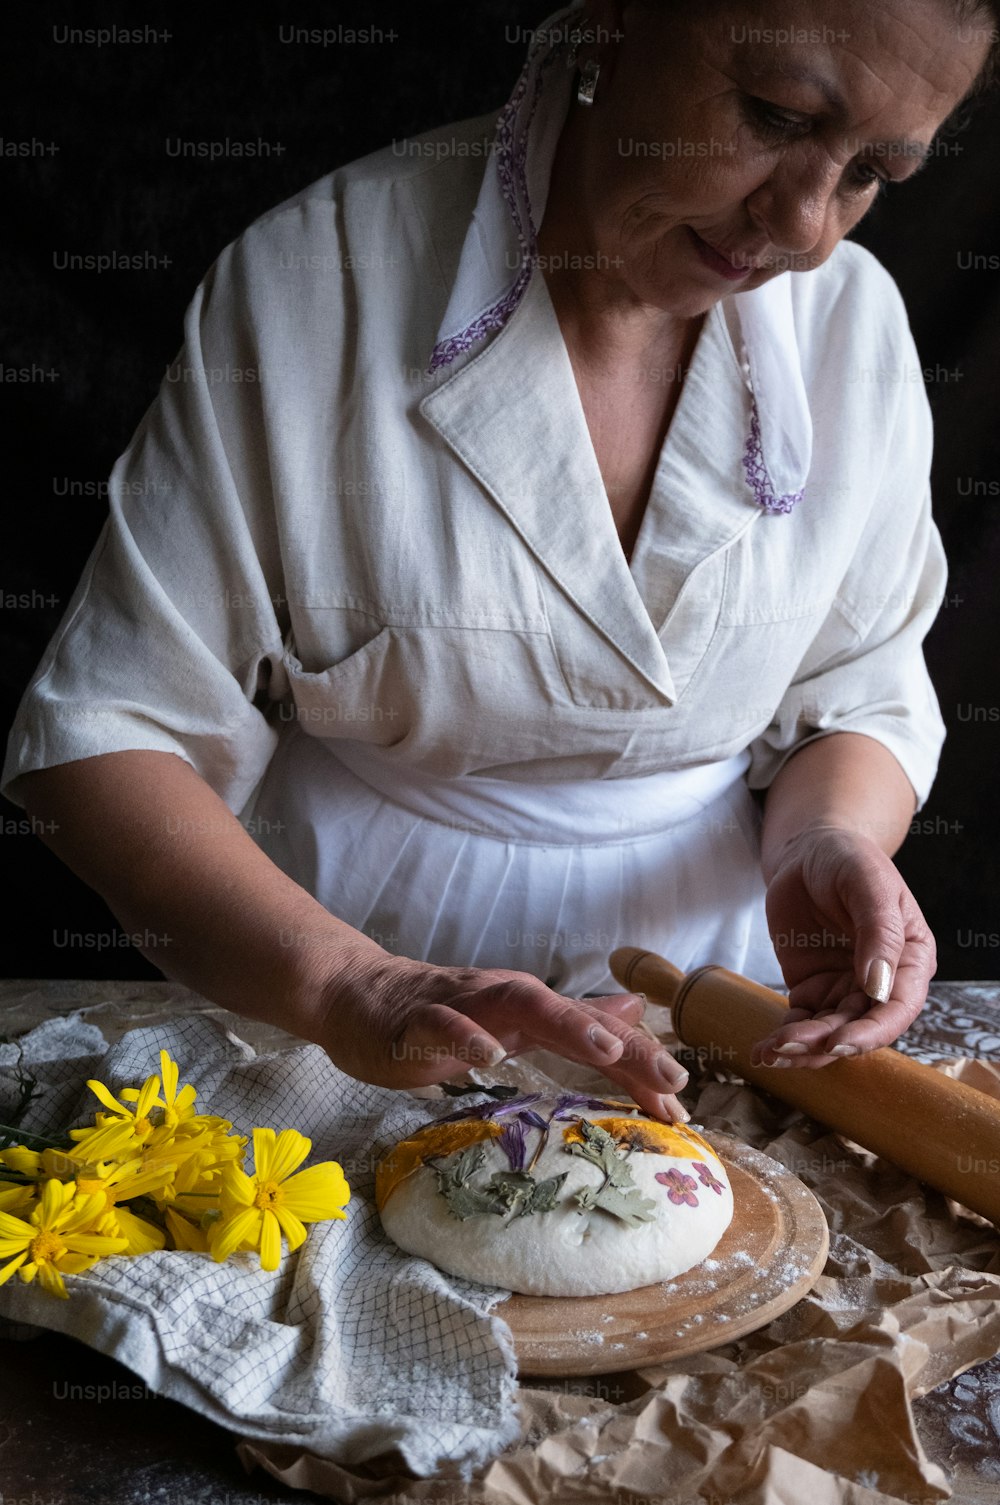 흰 셔츠를 입은 여자가 케이크를 만들고 있다